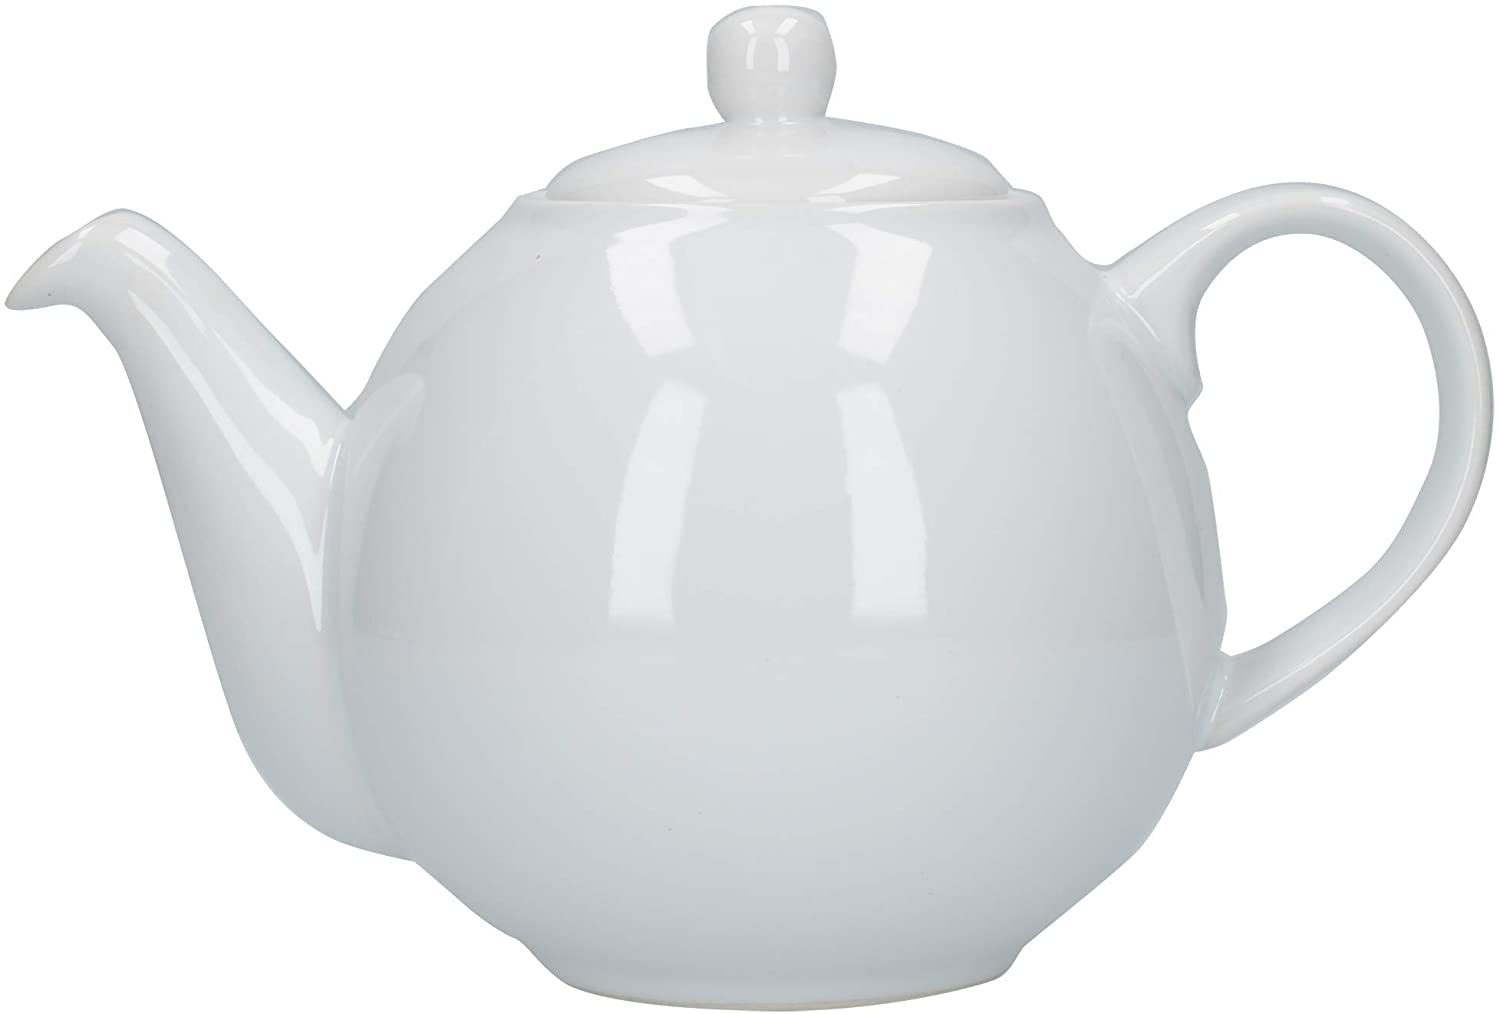 London Pottery 4 Cup Globe Teapot White